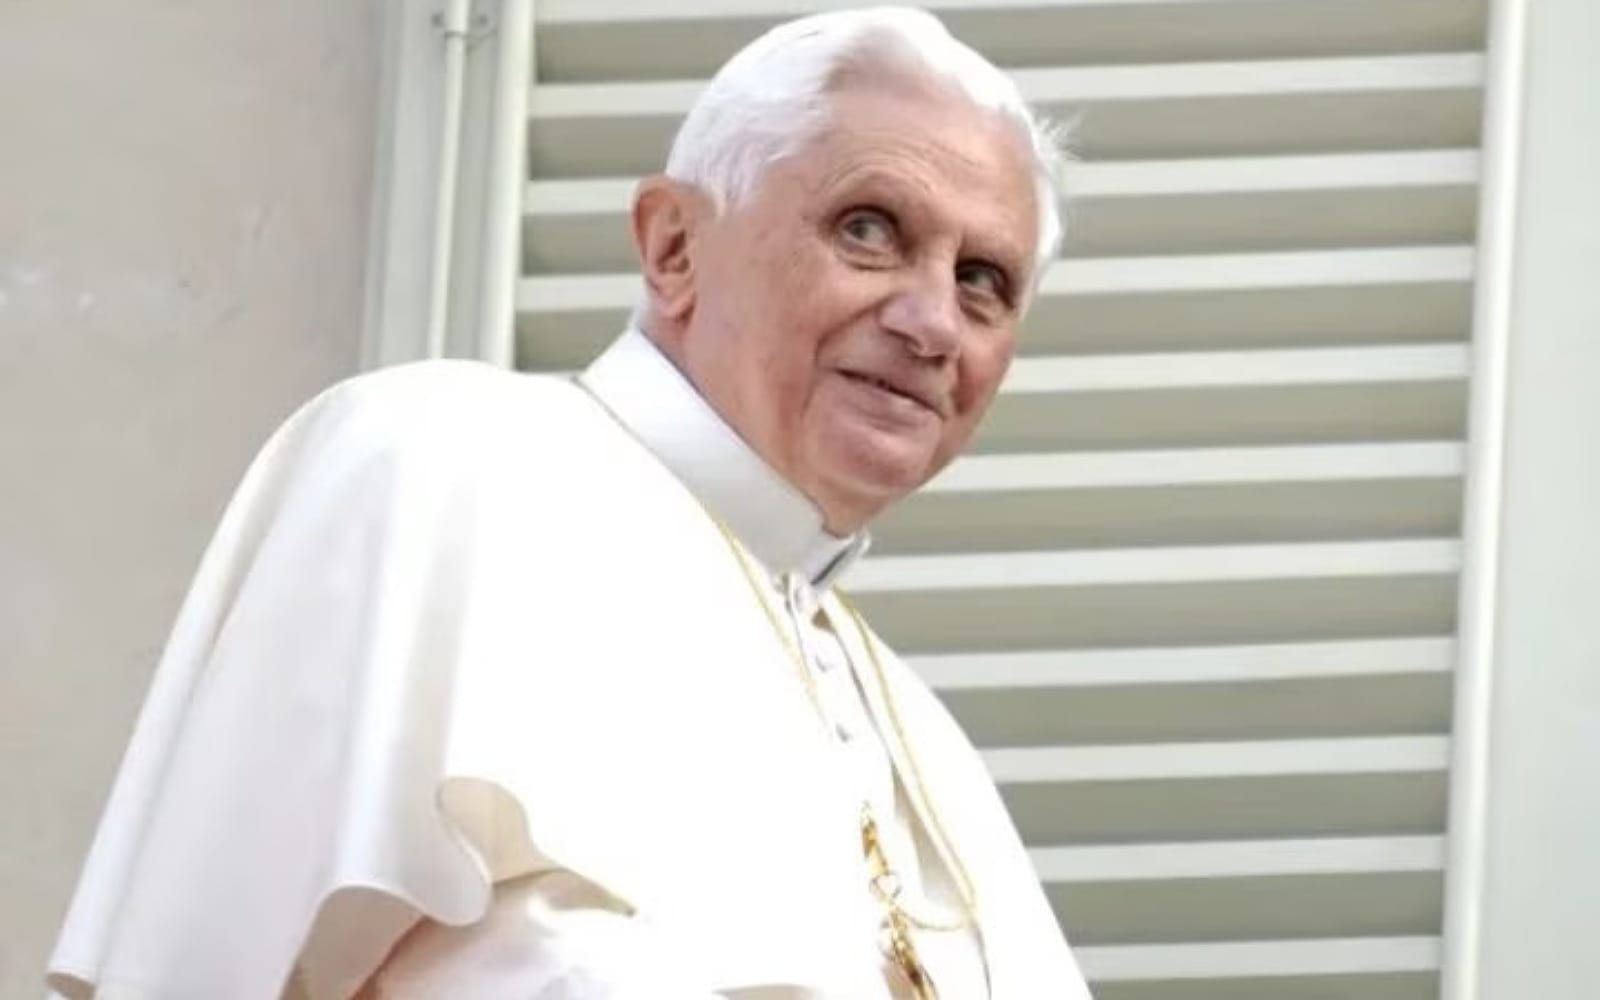 Cruz peitoral de Bento XVI furtada de Igreja na Alemanha ainda está desaparecida